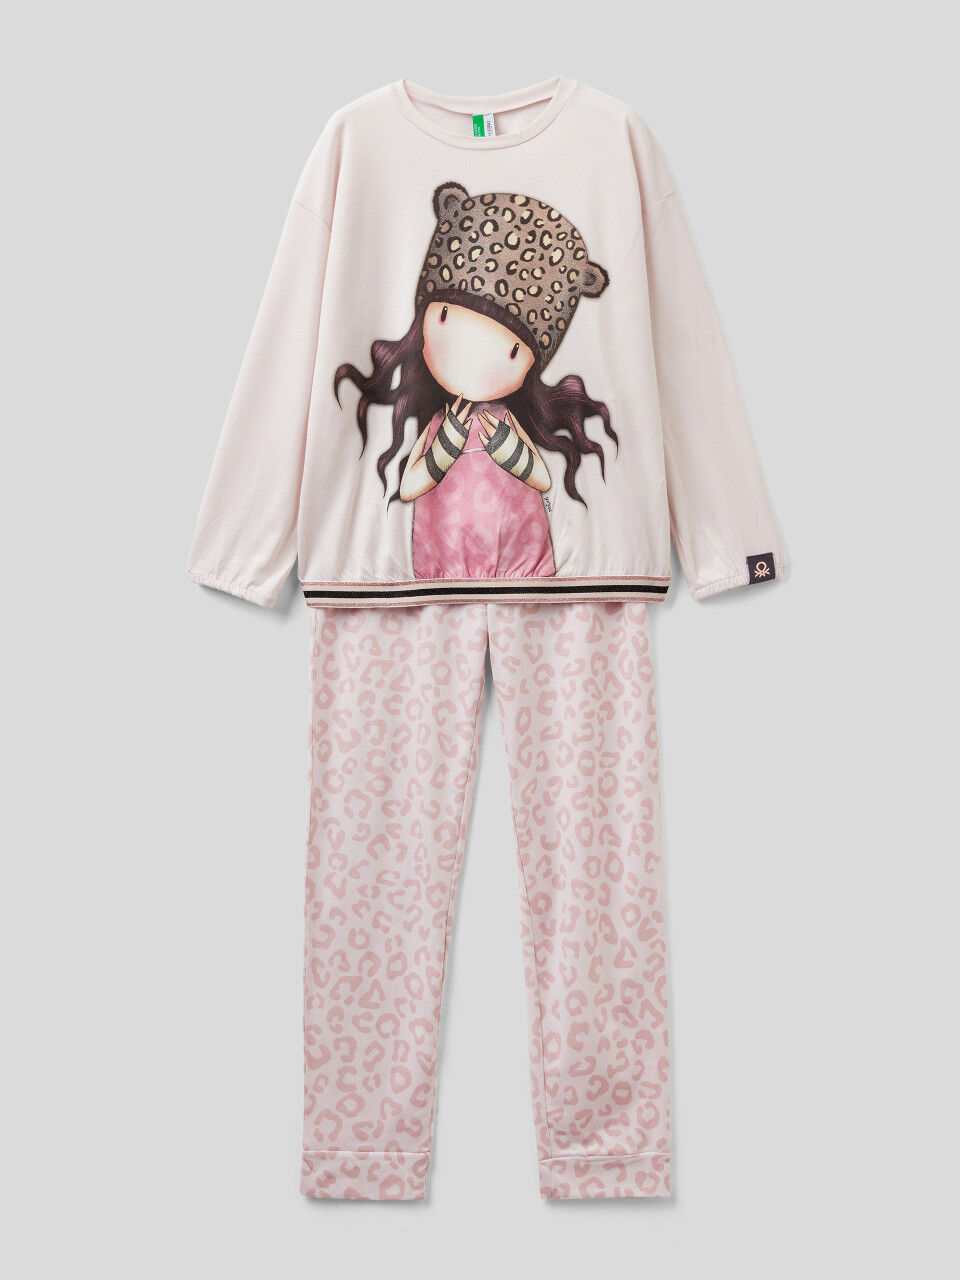 Pijama Gorjuss em algodão quente e viscose